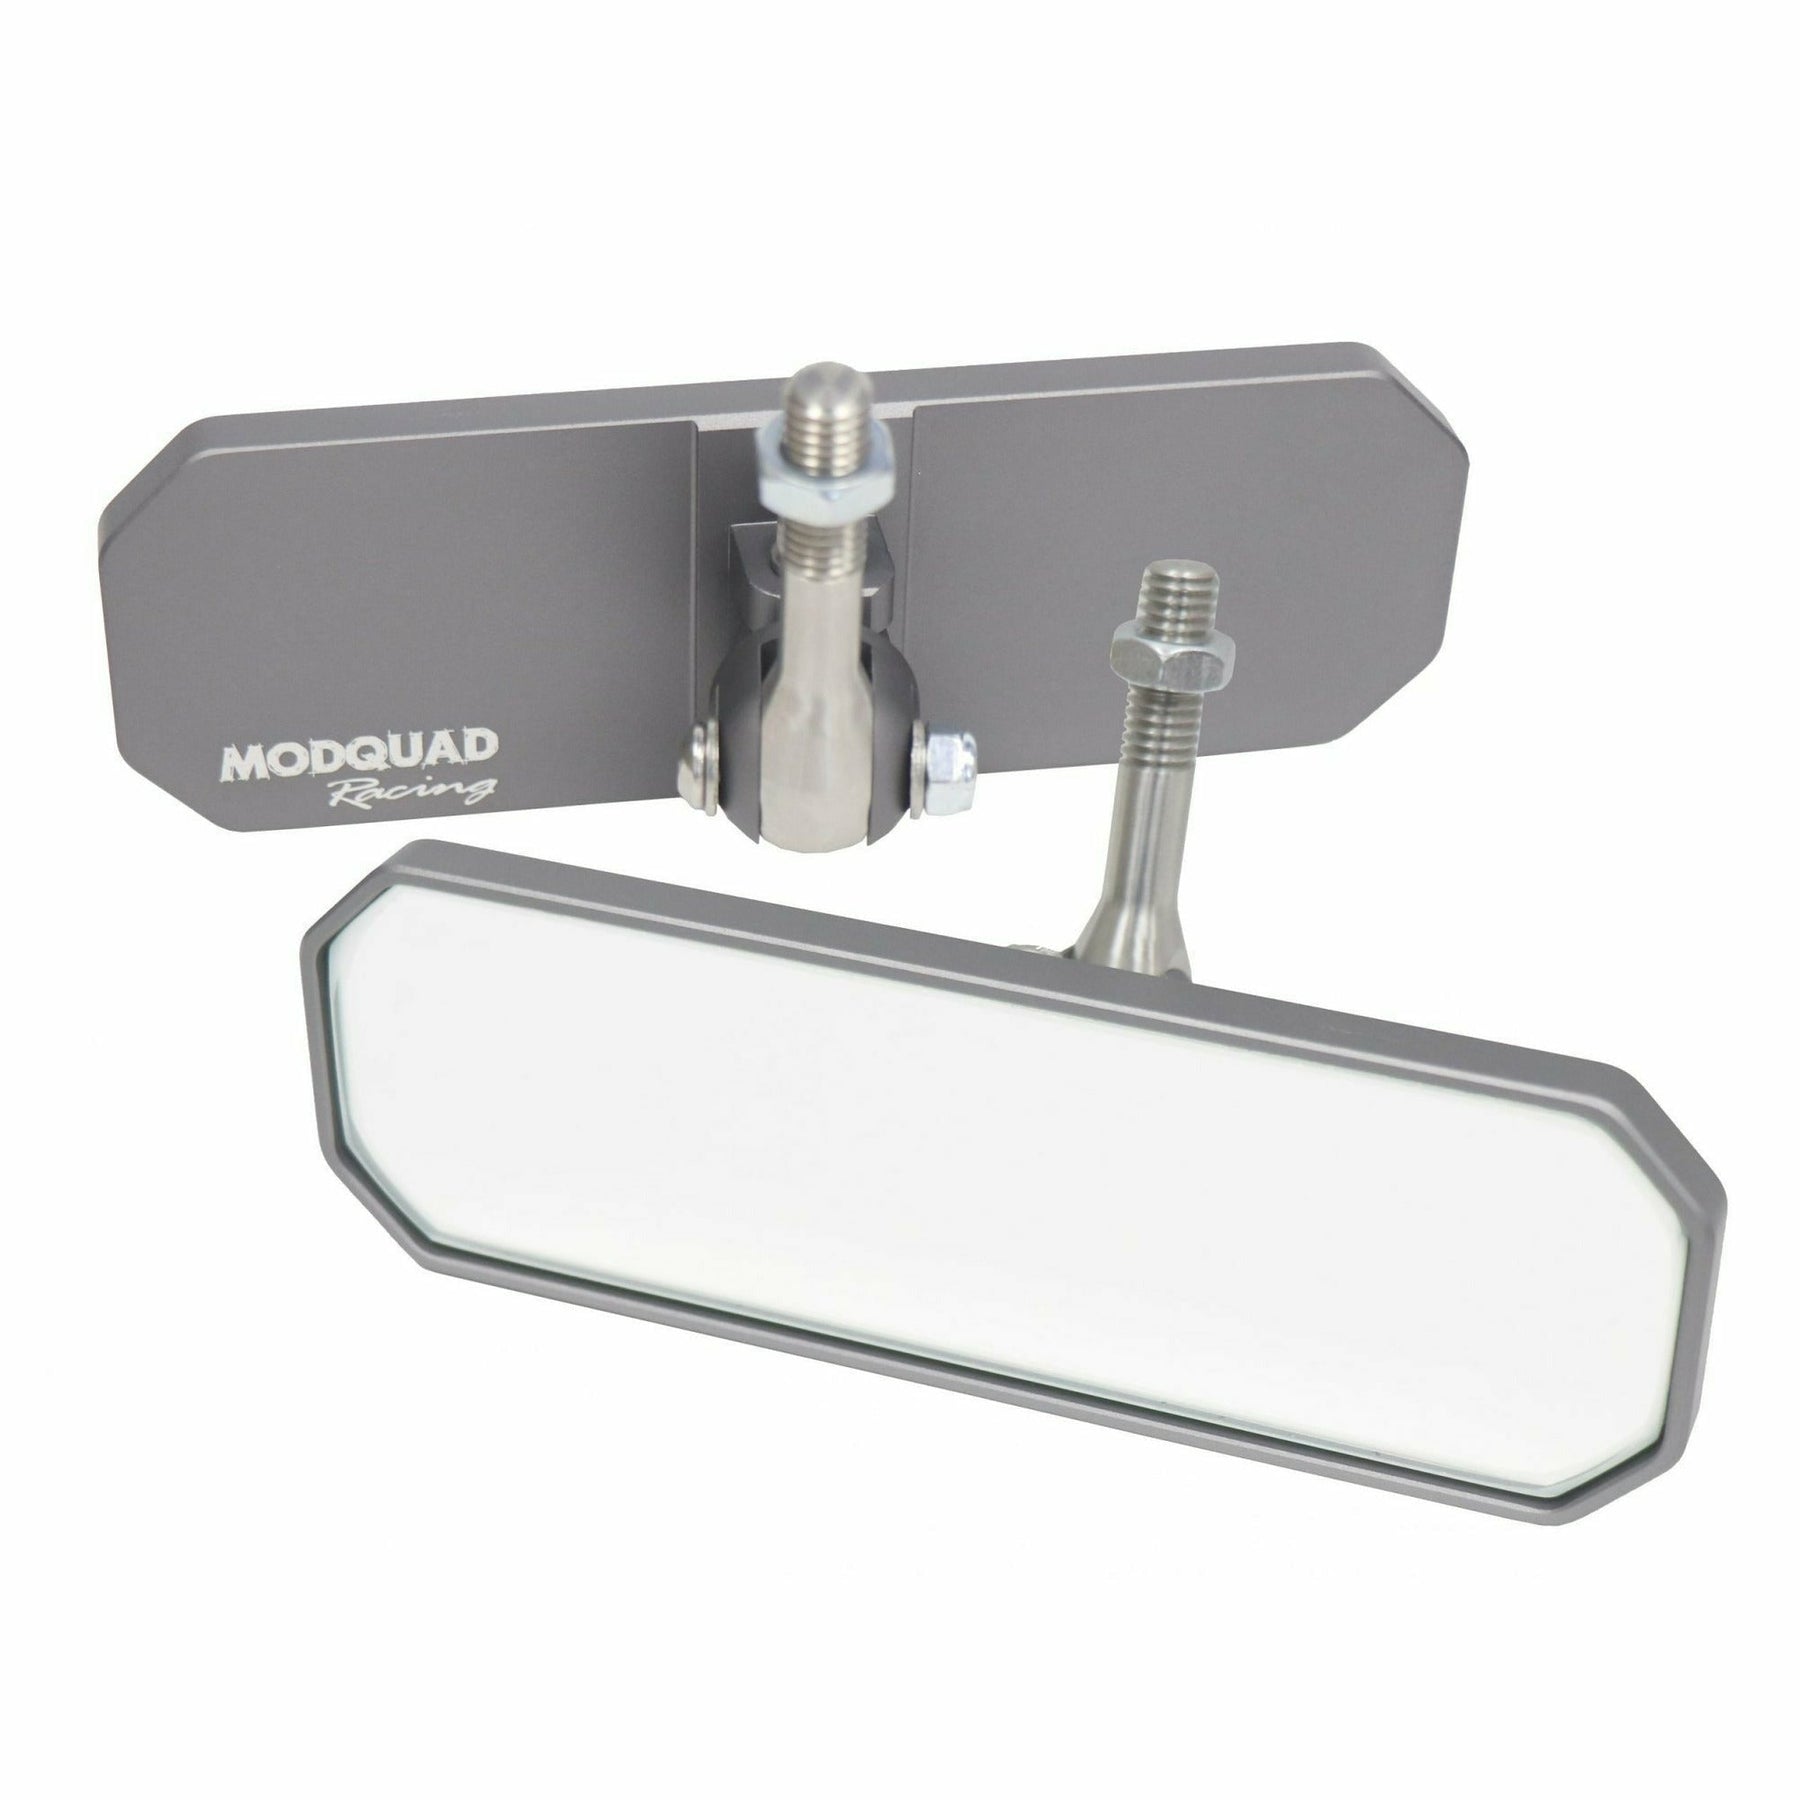 ModQuad Single Clamp Rear View Mirror